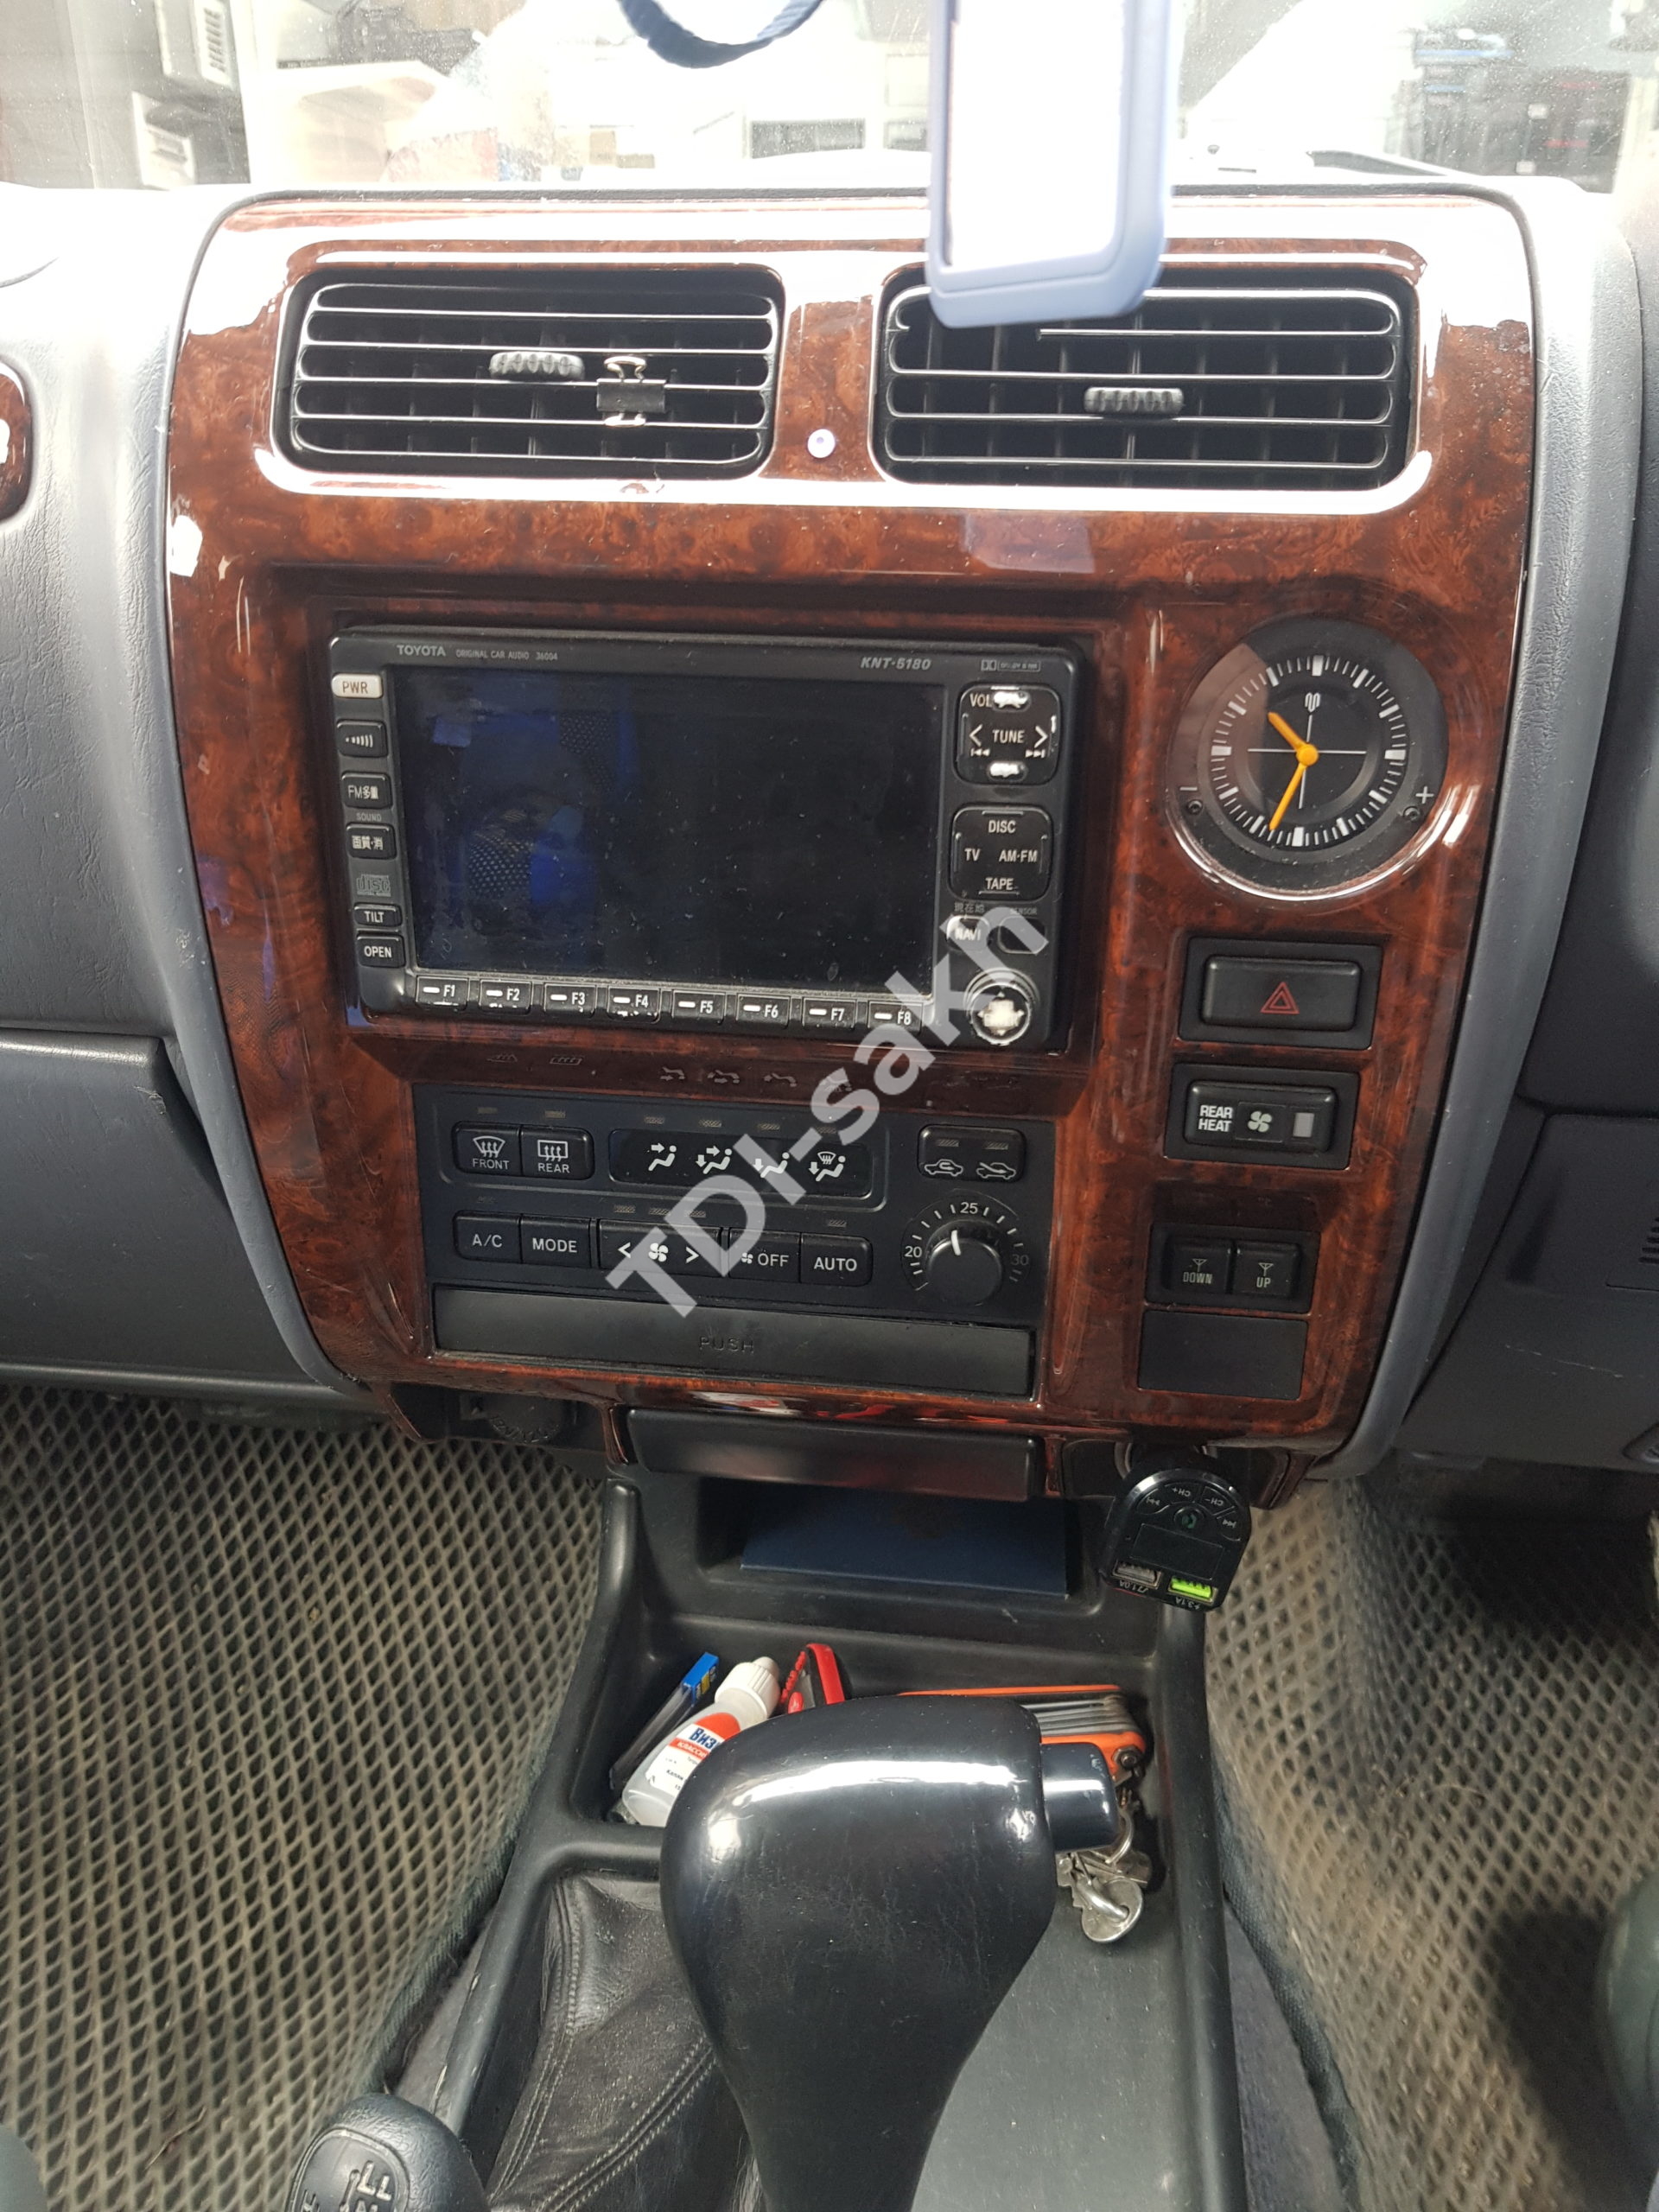 автомагнитола Toyota Prado 185 - купить недорого в Южно-Сахалинске с установкой - автомагнитолы